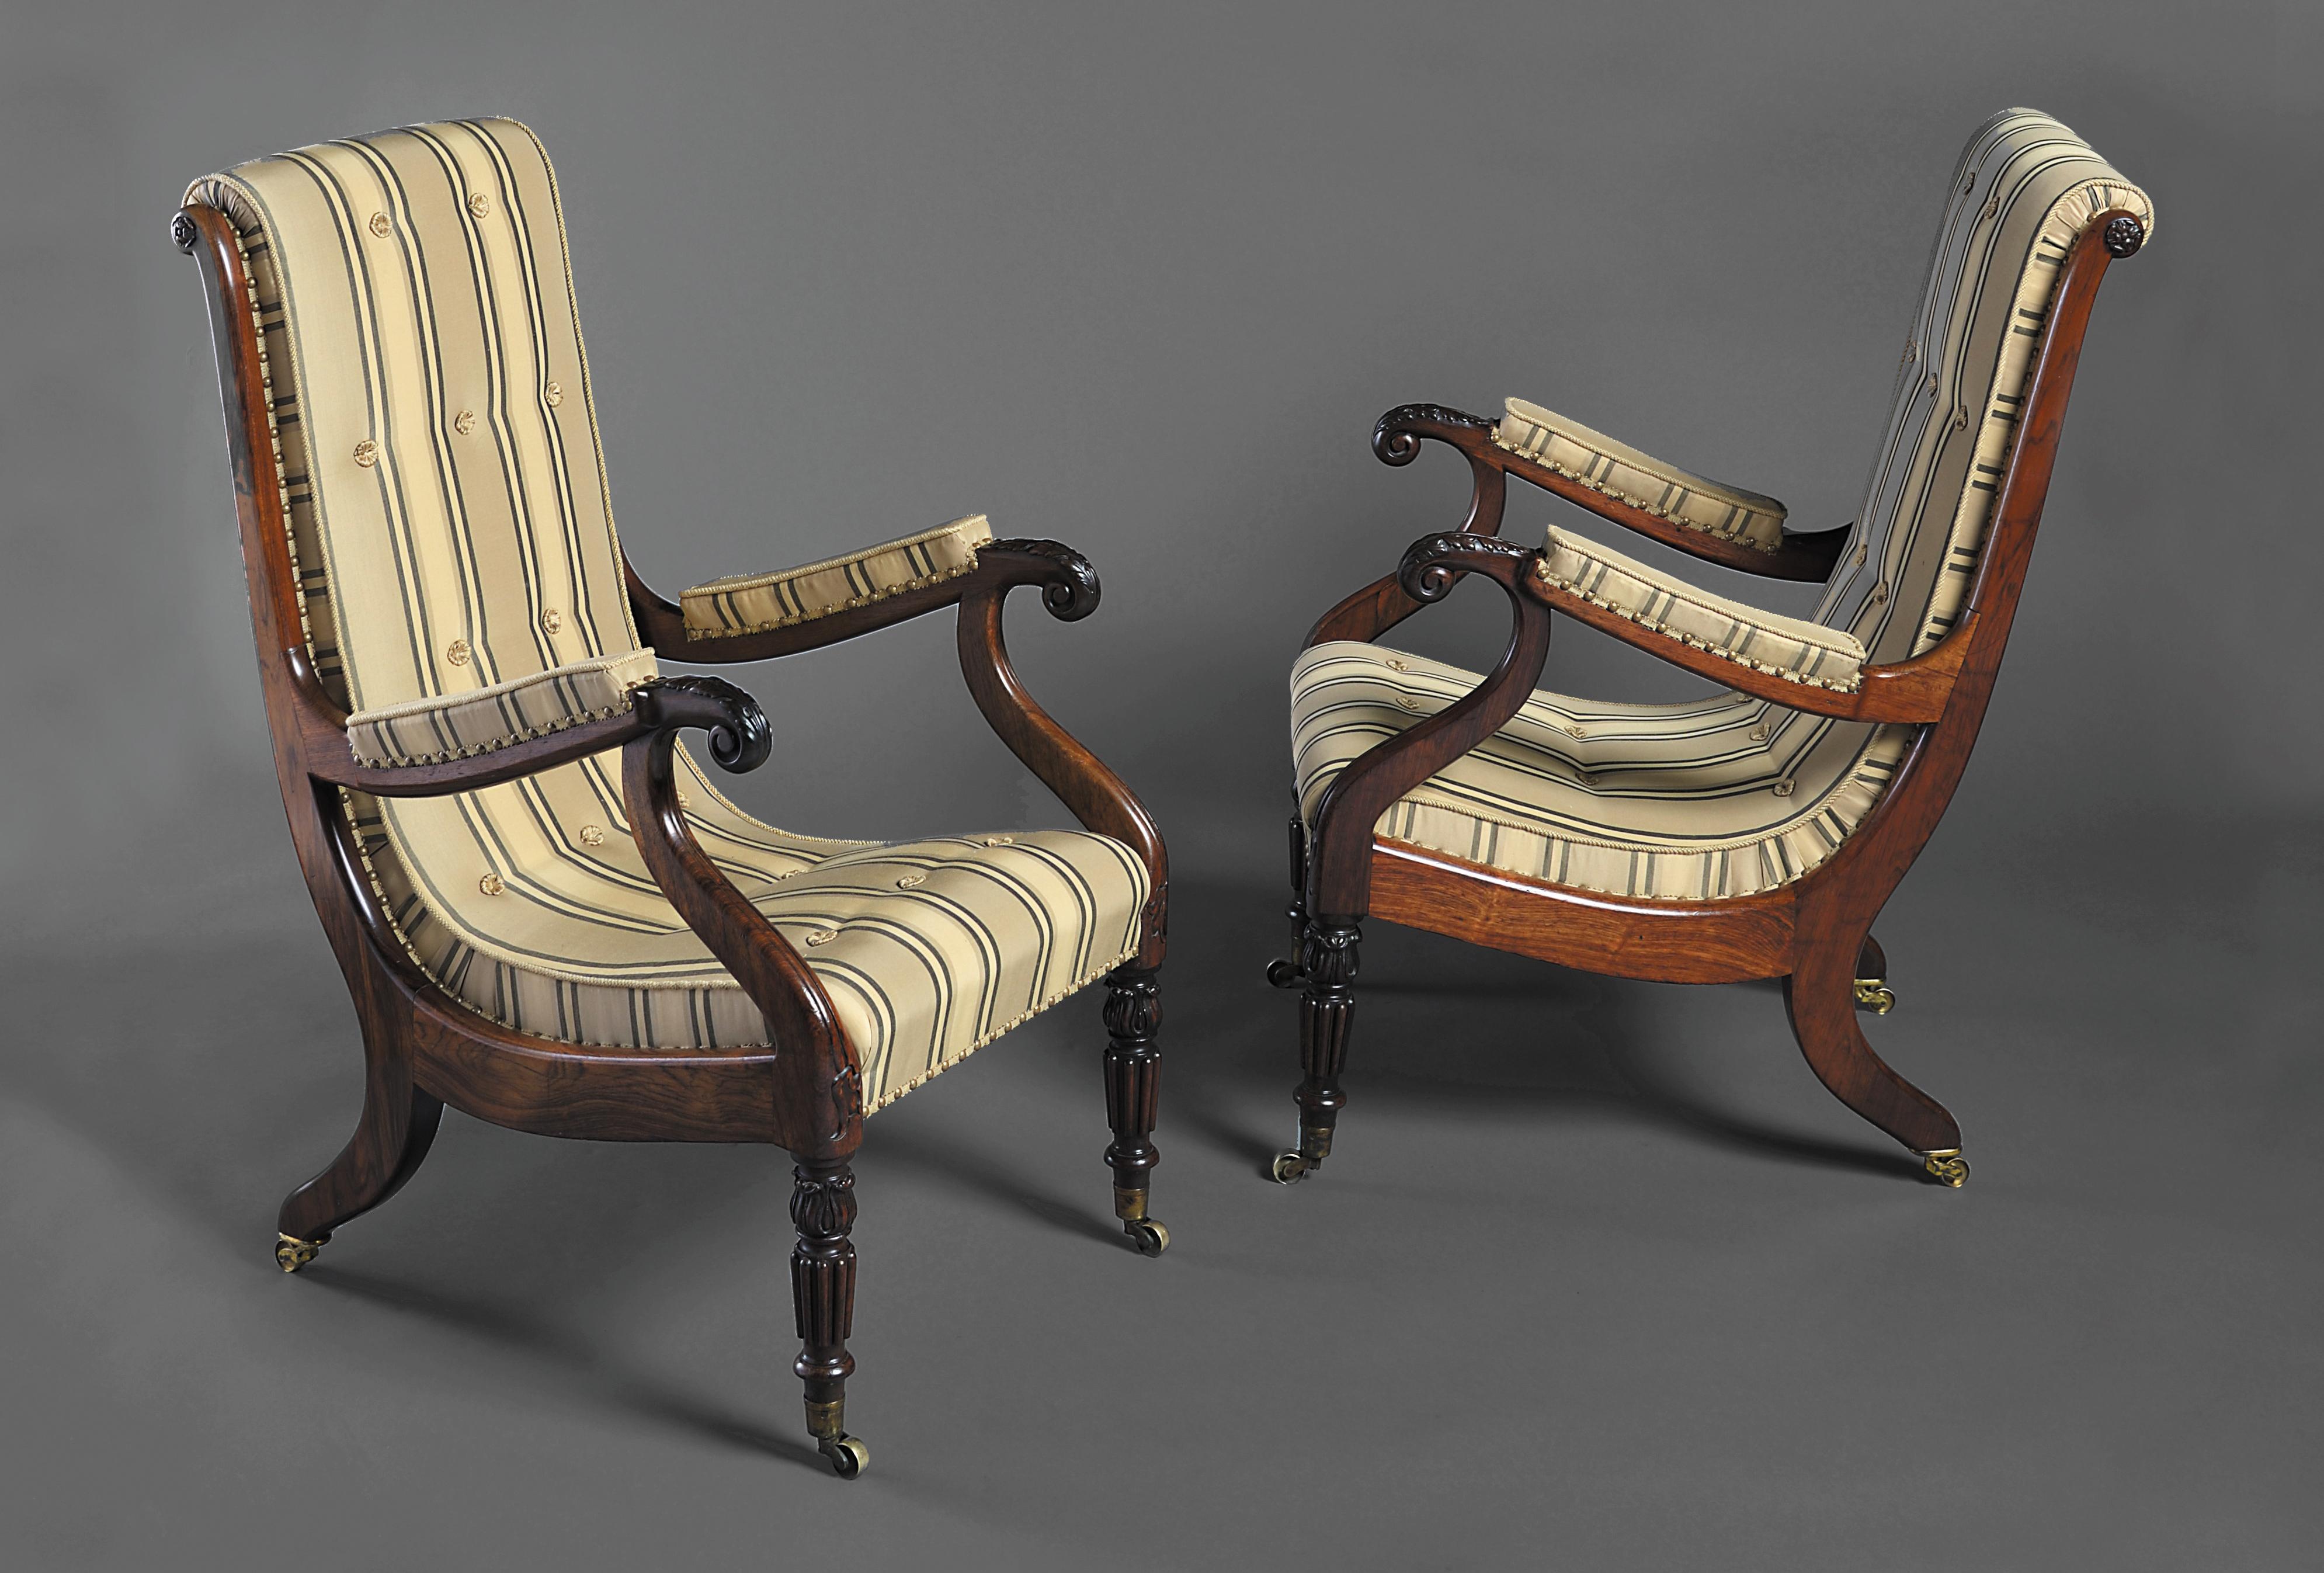 Une belle paire de fauteuils de bibliothèque irlandais George IV, les dossiers bien formés avec un profil en forme de volute, les accoudoirs sculptés d'acanthes, reposant sur des pieds cannelés tournés, avec une sculpture de feuille de lotus et des